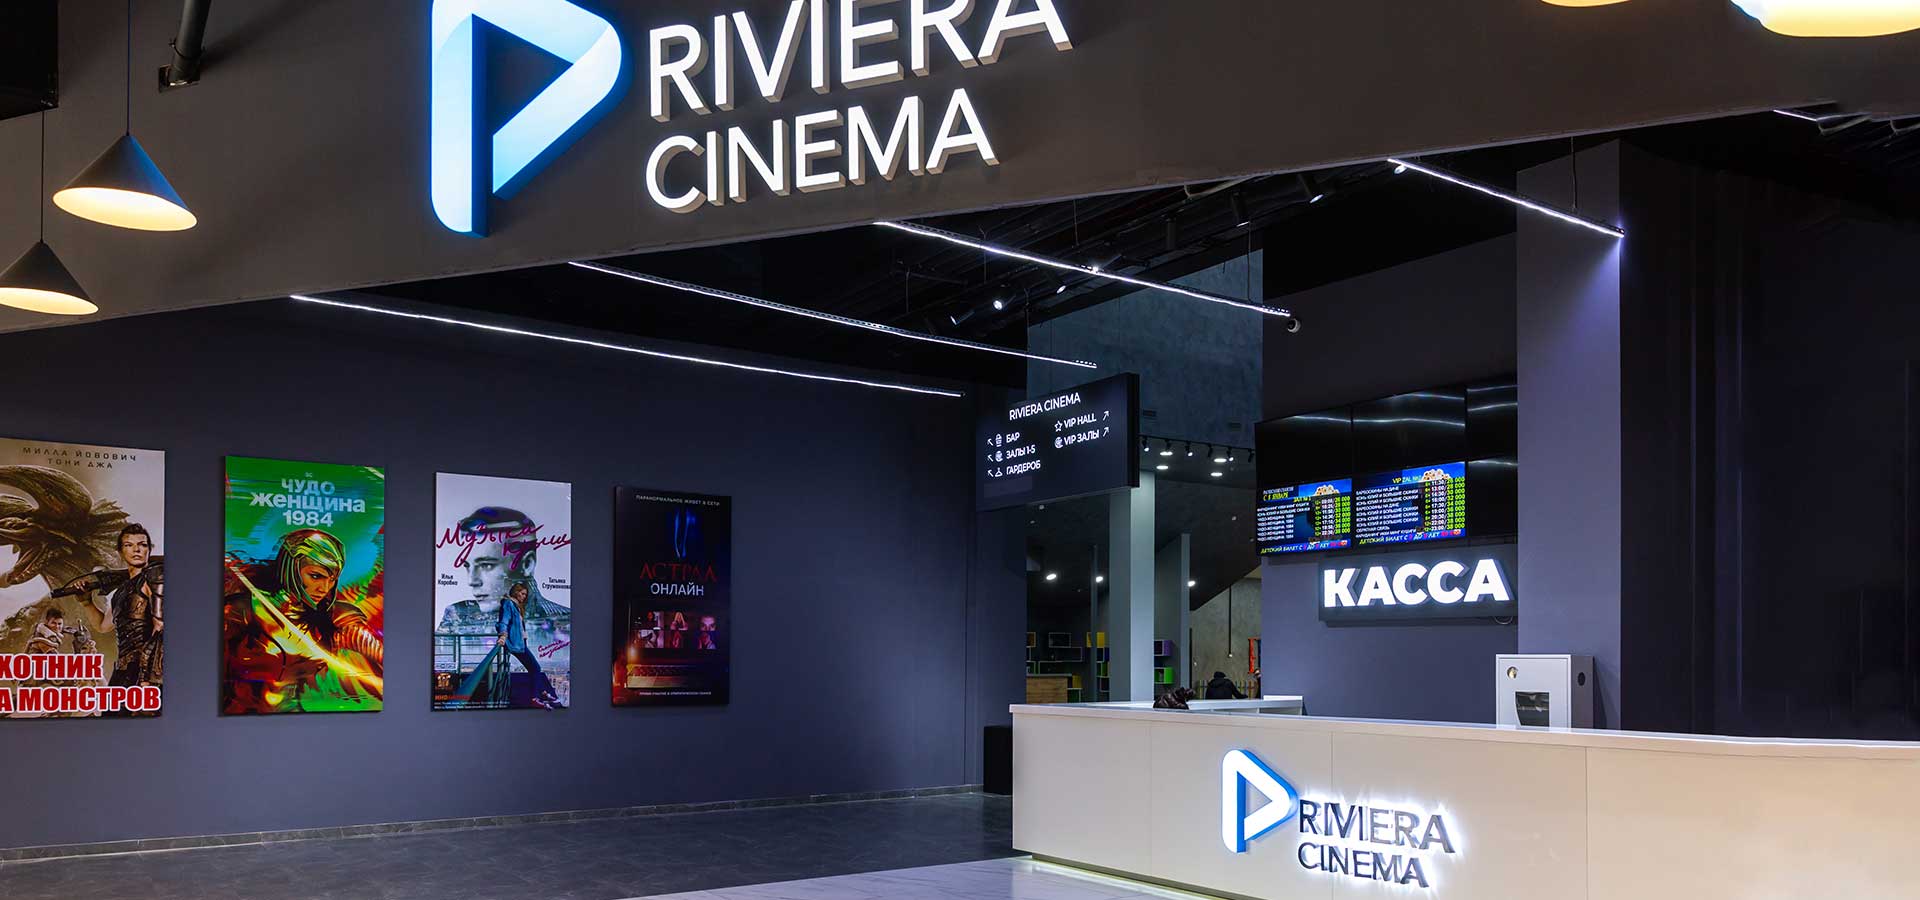 Кинотеатр «Riviera Cinema, зал №2» в Ташкенте - расписание фильмов, афиша кино, адрес, телефоны и другие контакты